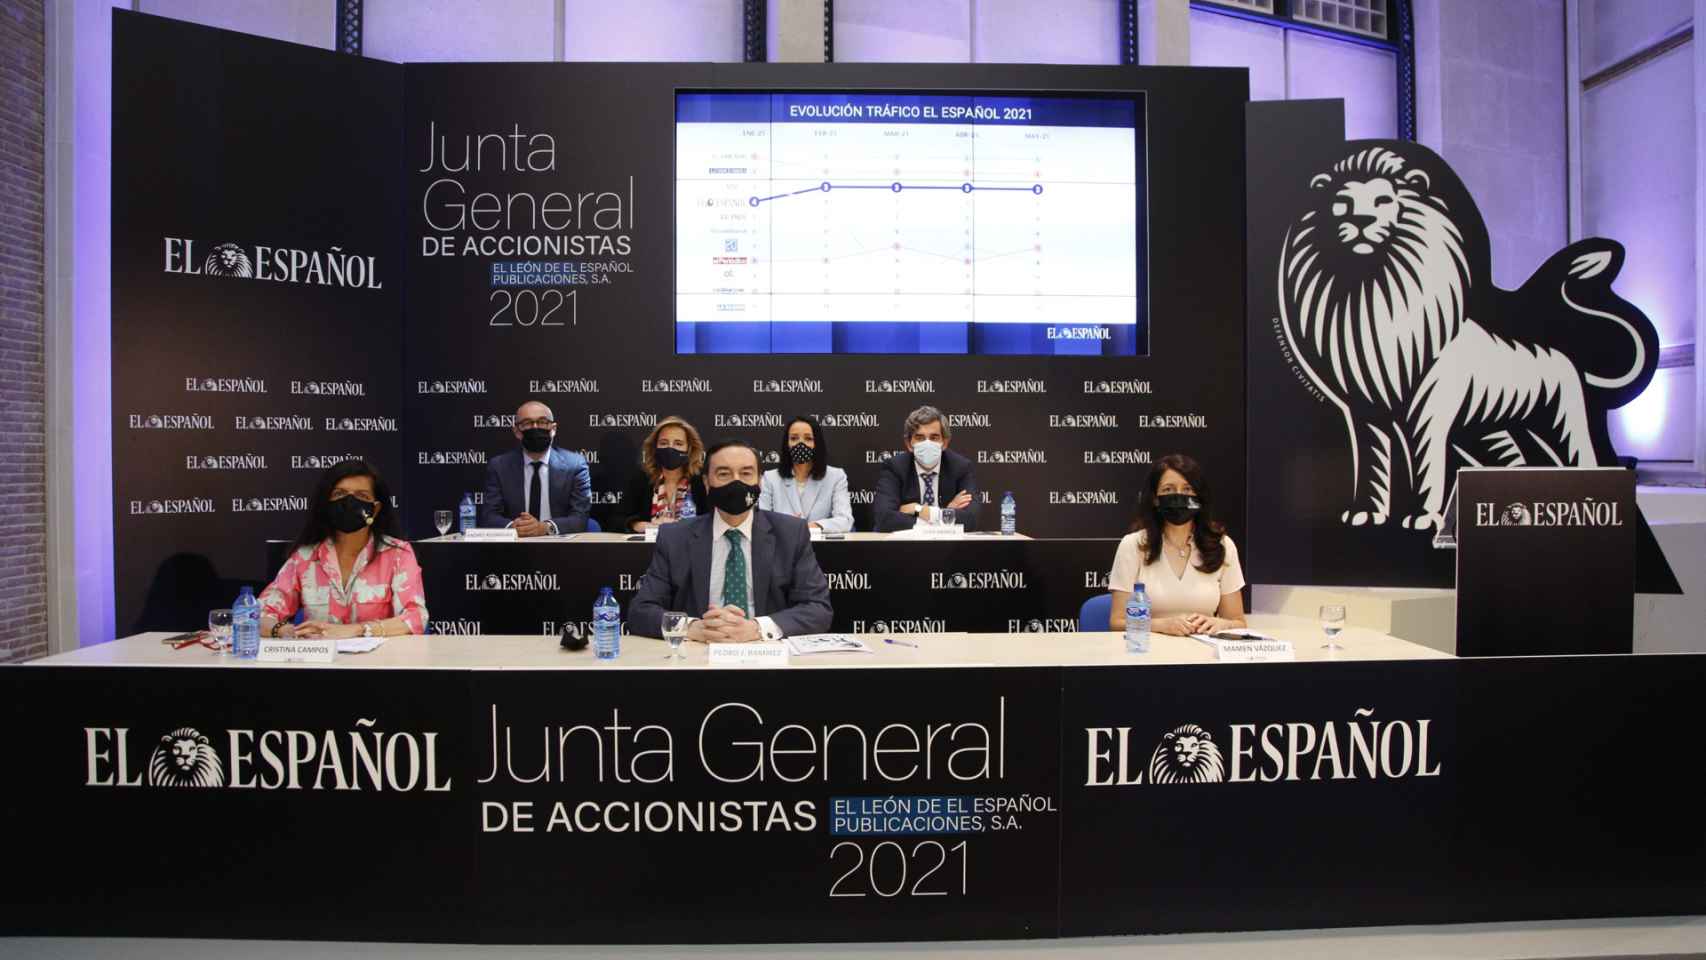 Los miembros del consejo de administración de EL ESPAÑOL durante la junta de accionistas.